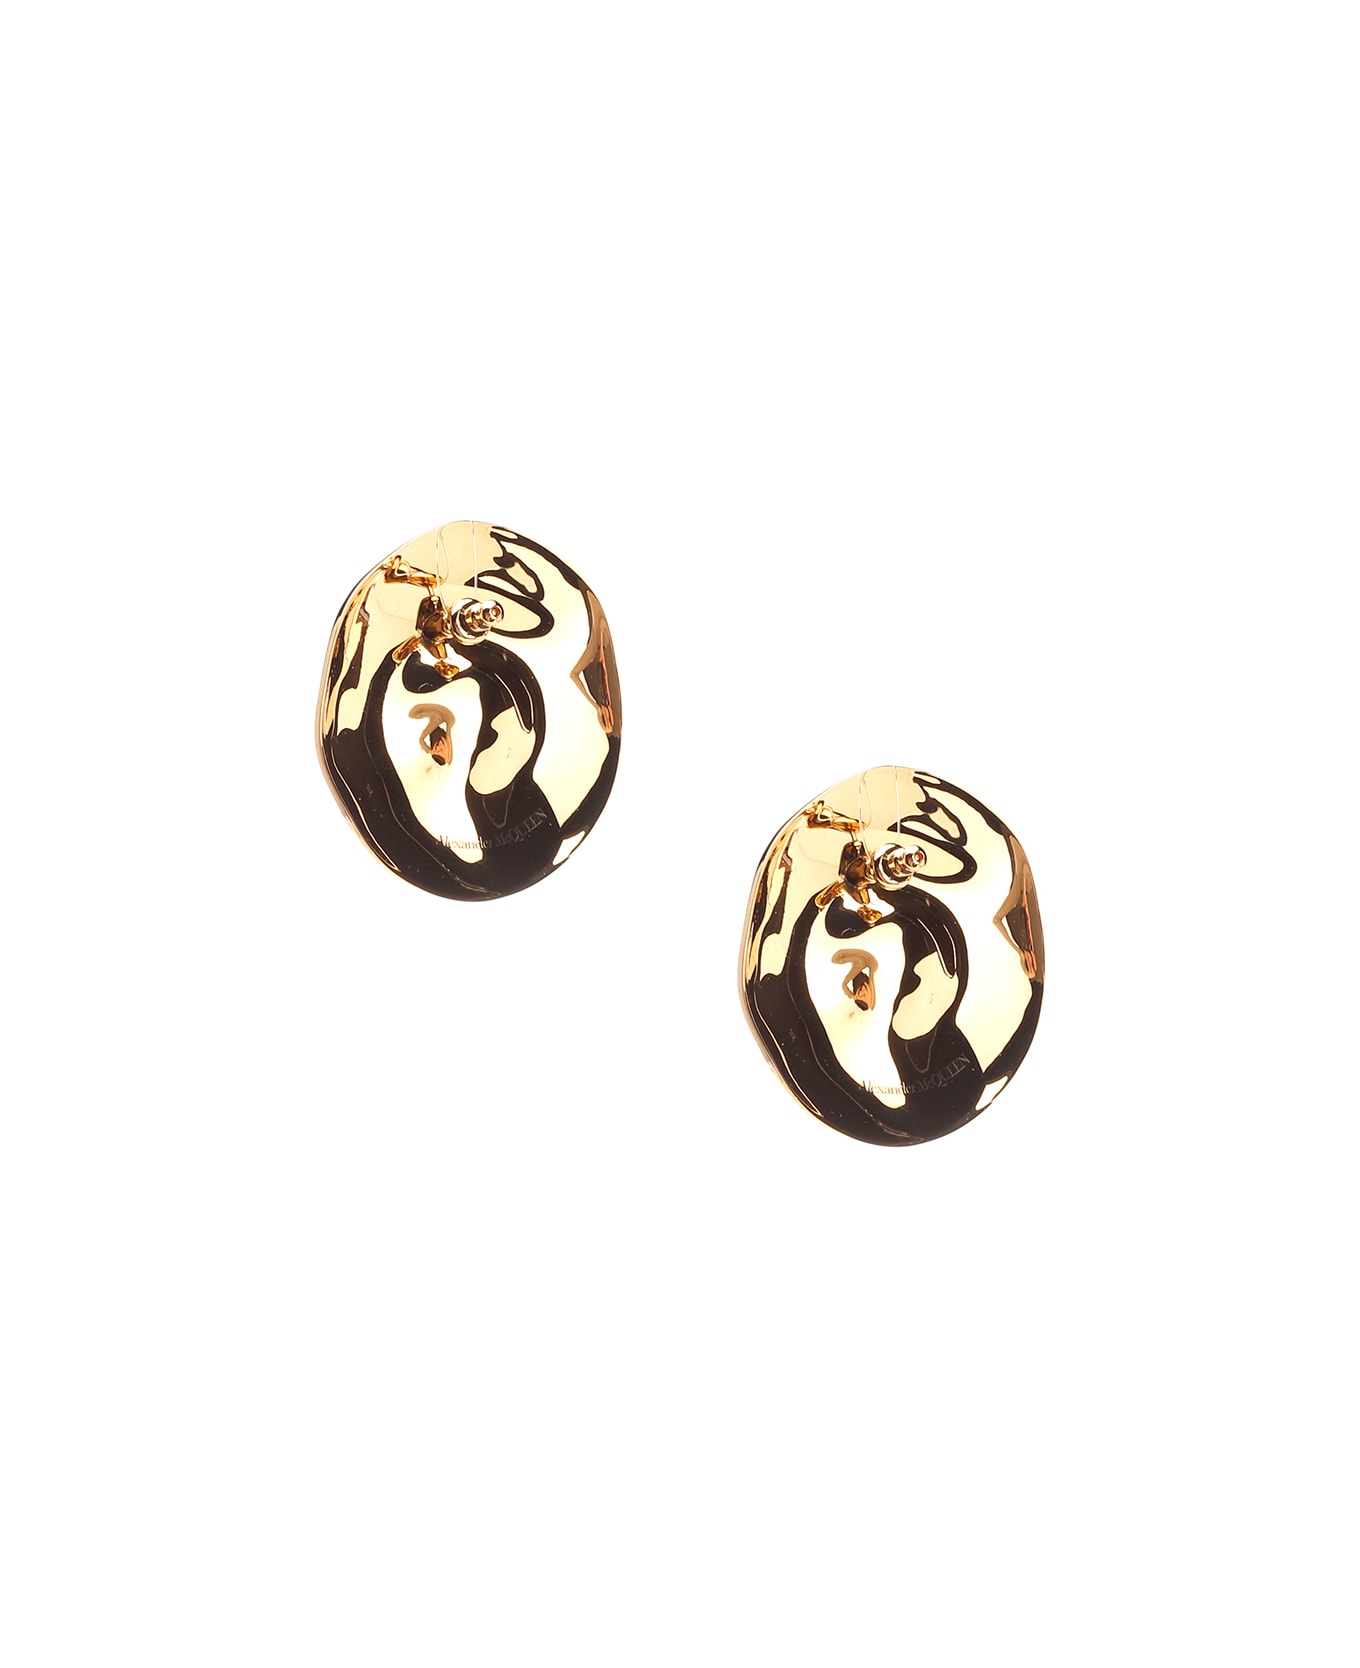 Alexander McQueen Metallic Earrings - Gold